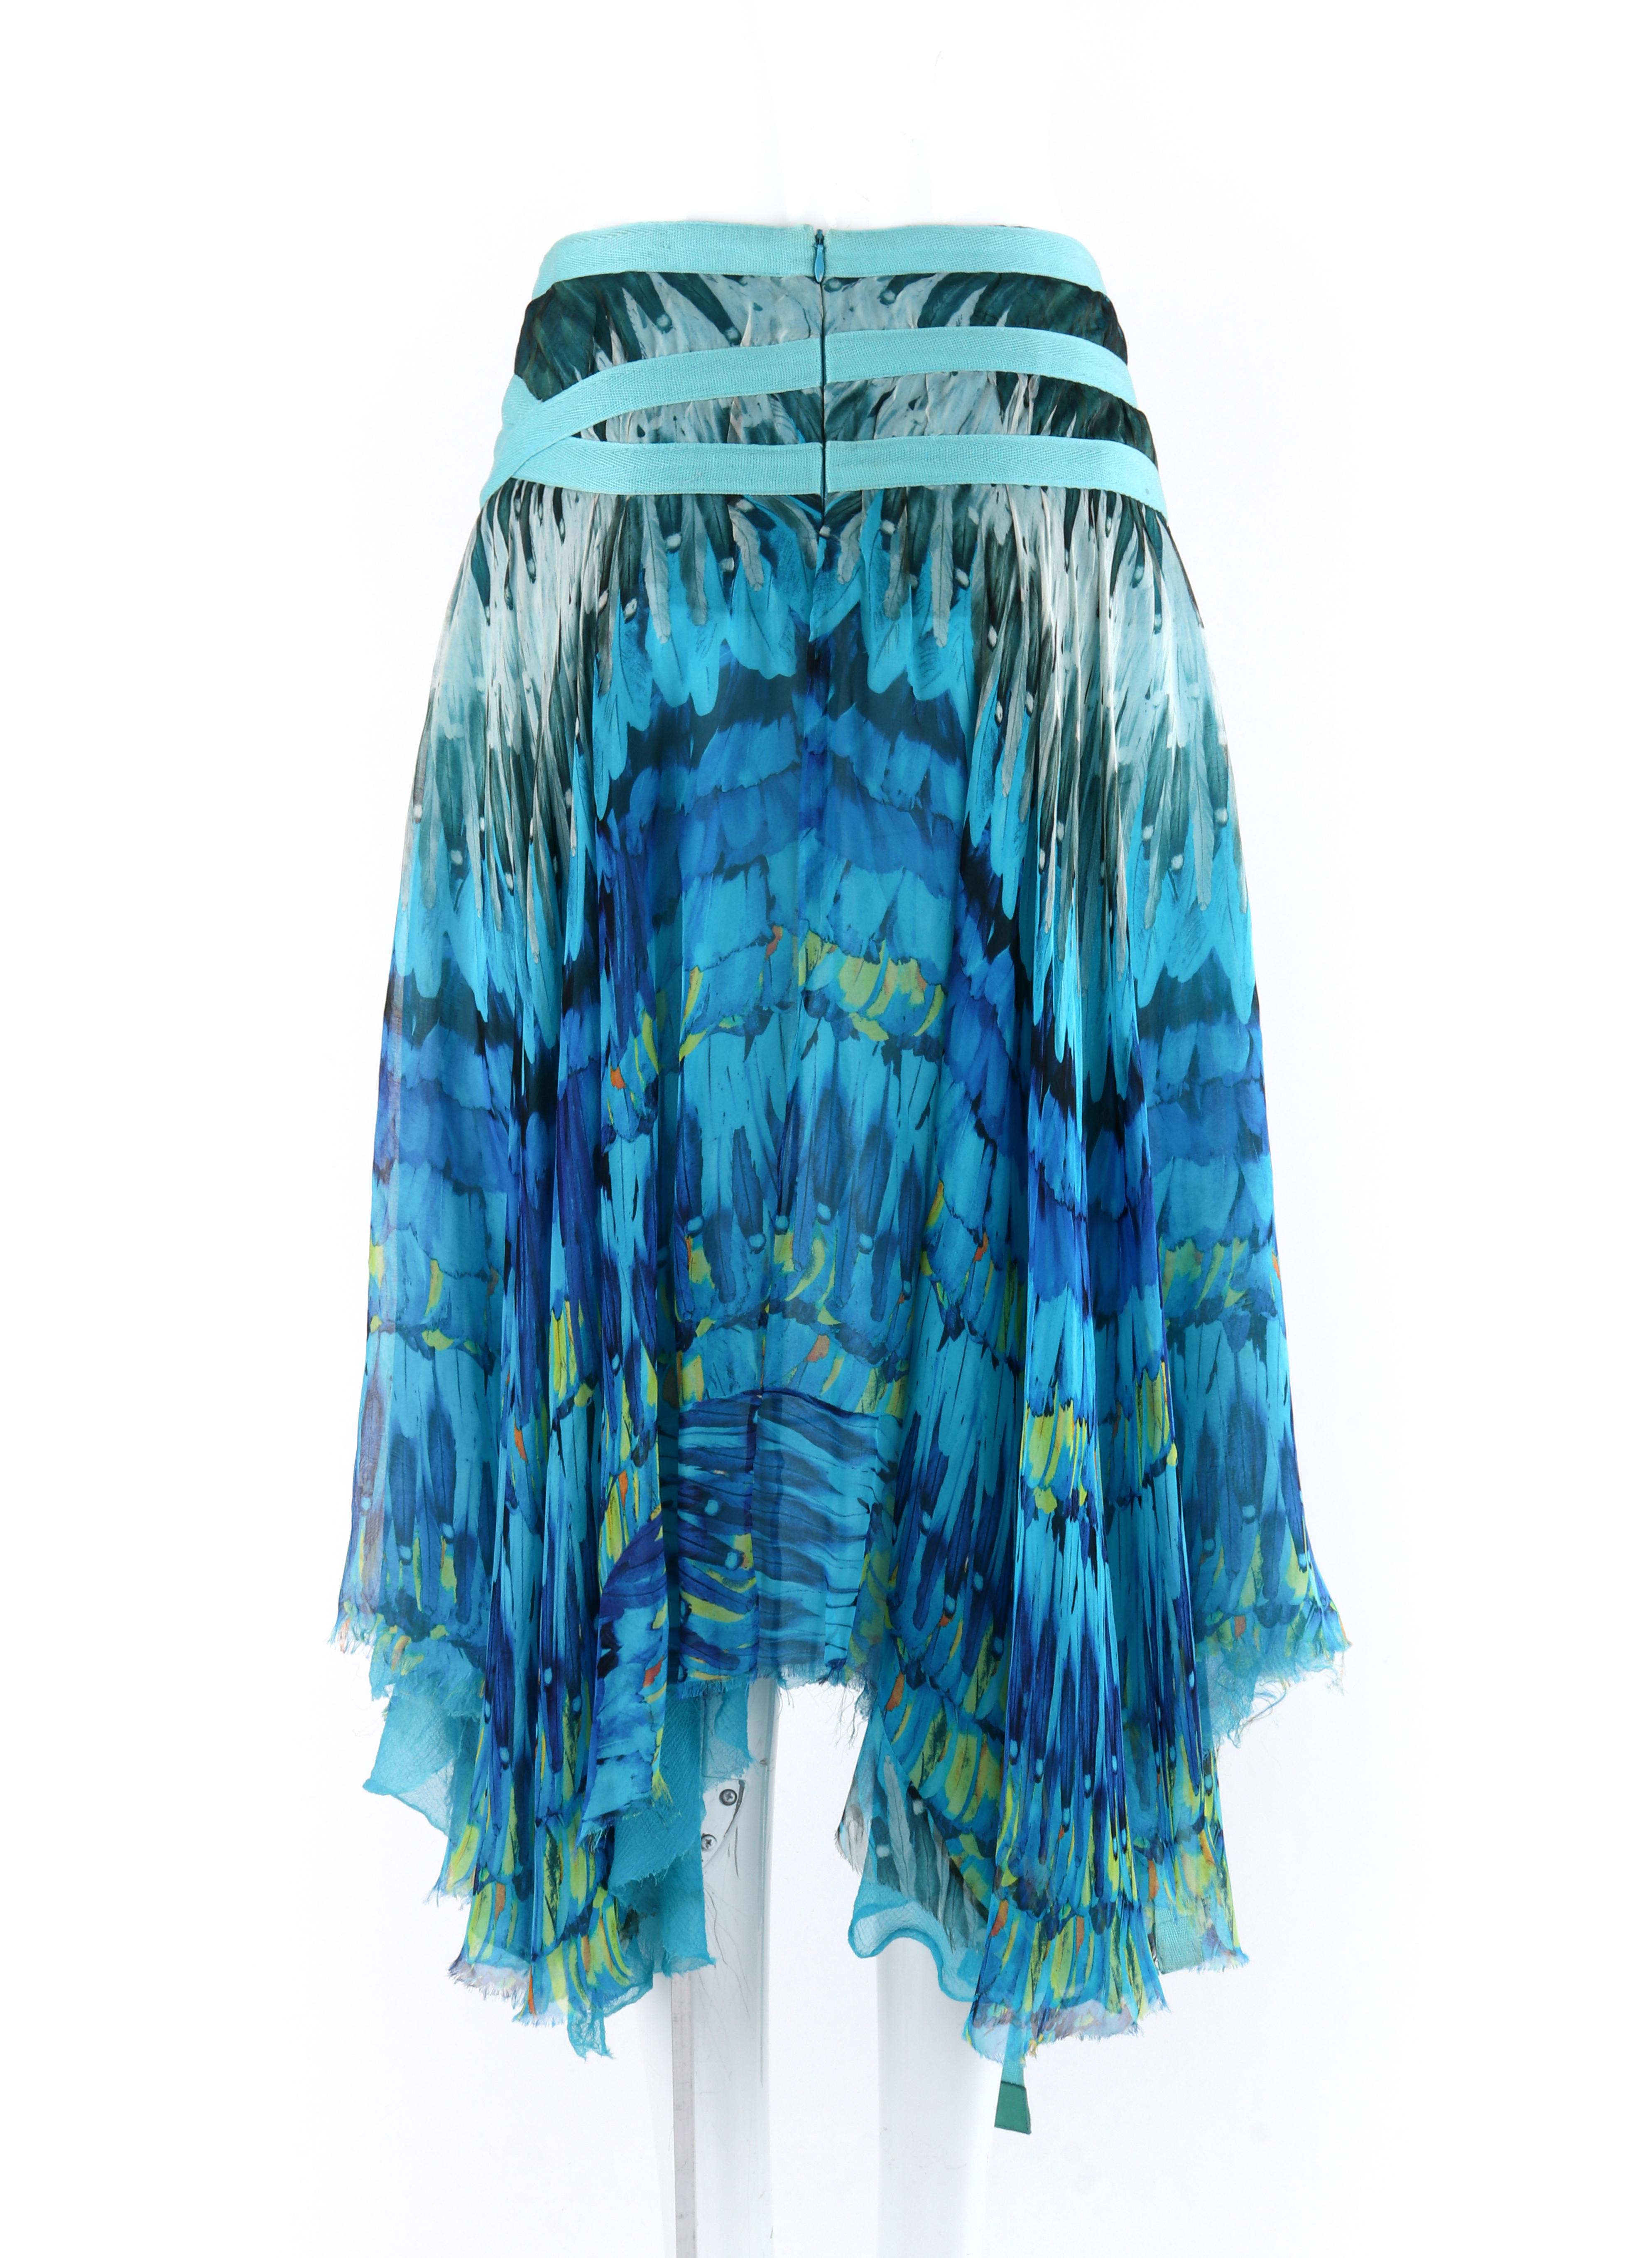 ALEXANDER McQUEEN S/S 2003 “Irere” Blue Feather Silk Handkerchief Hem Midi Skirt 2